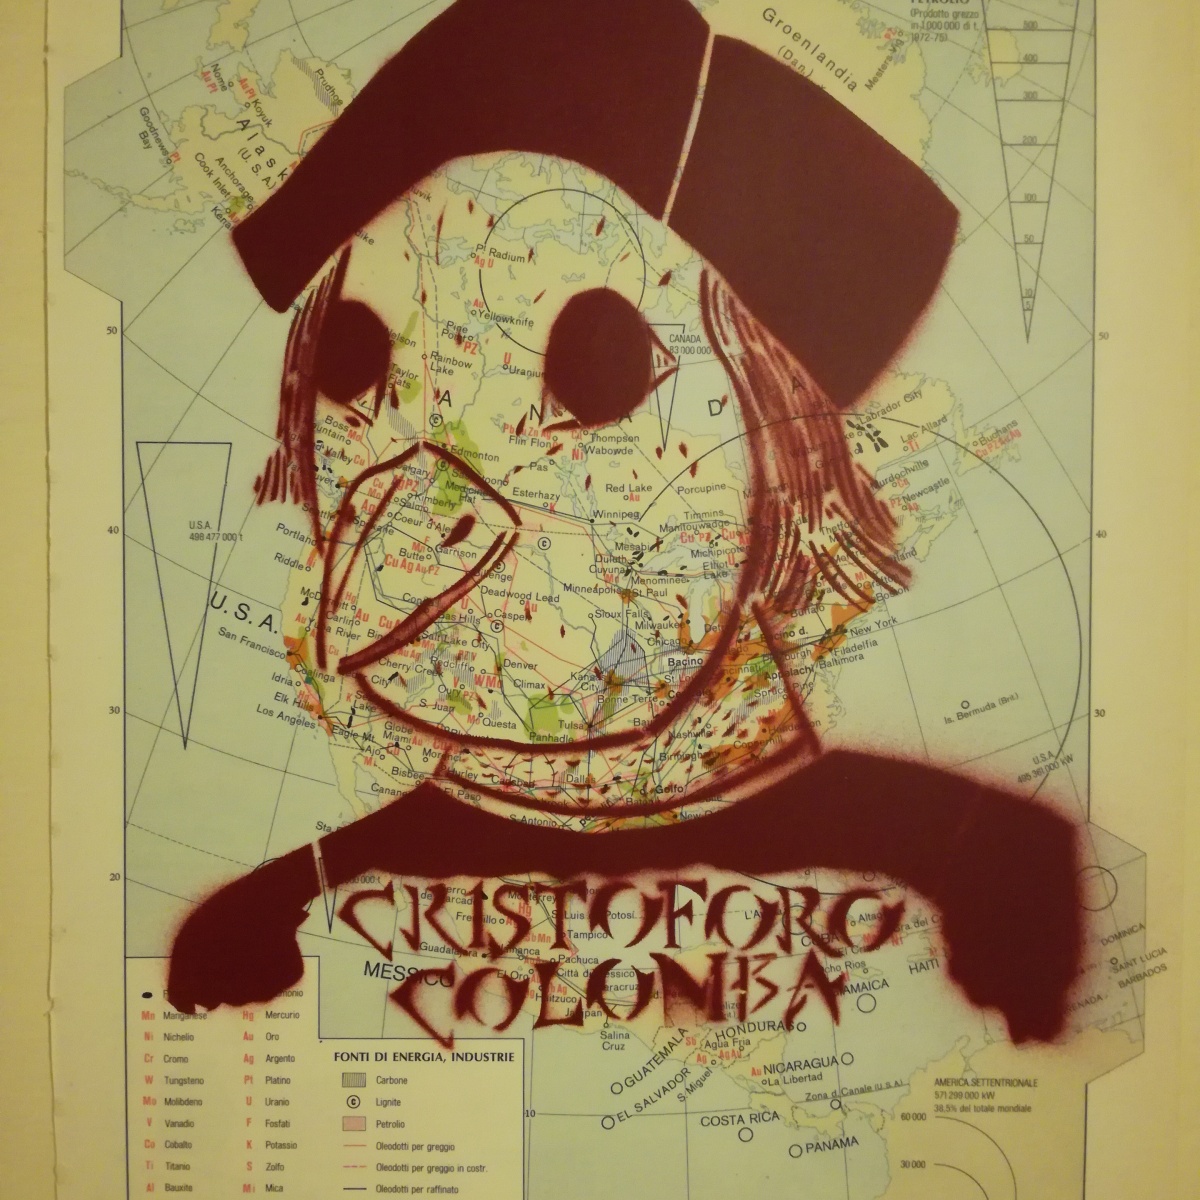 Cristoforo Colomba (atlantis edition)